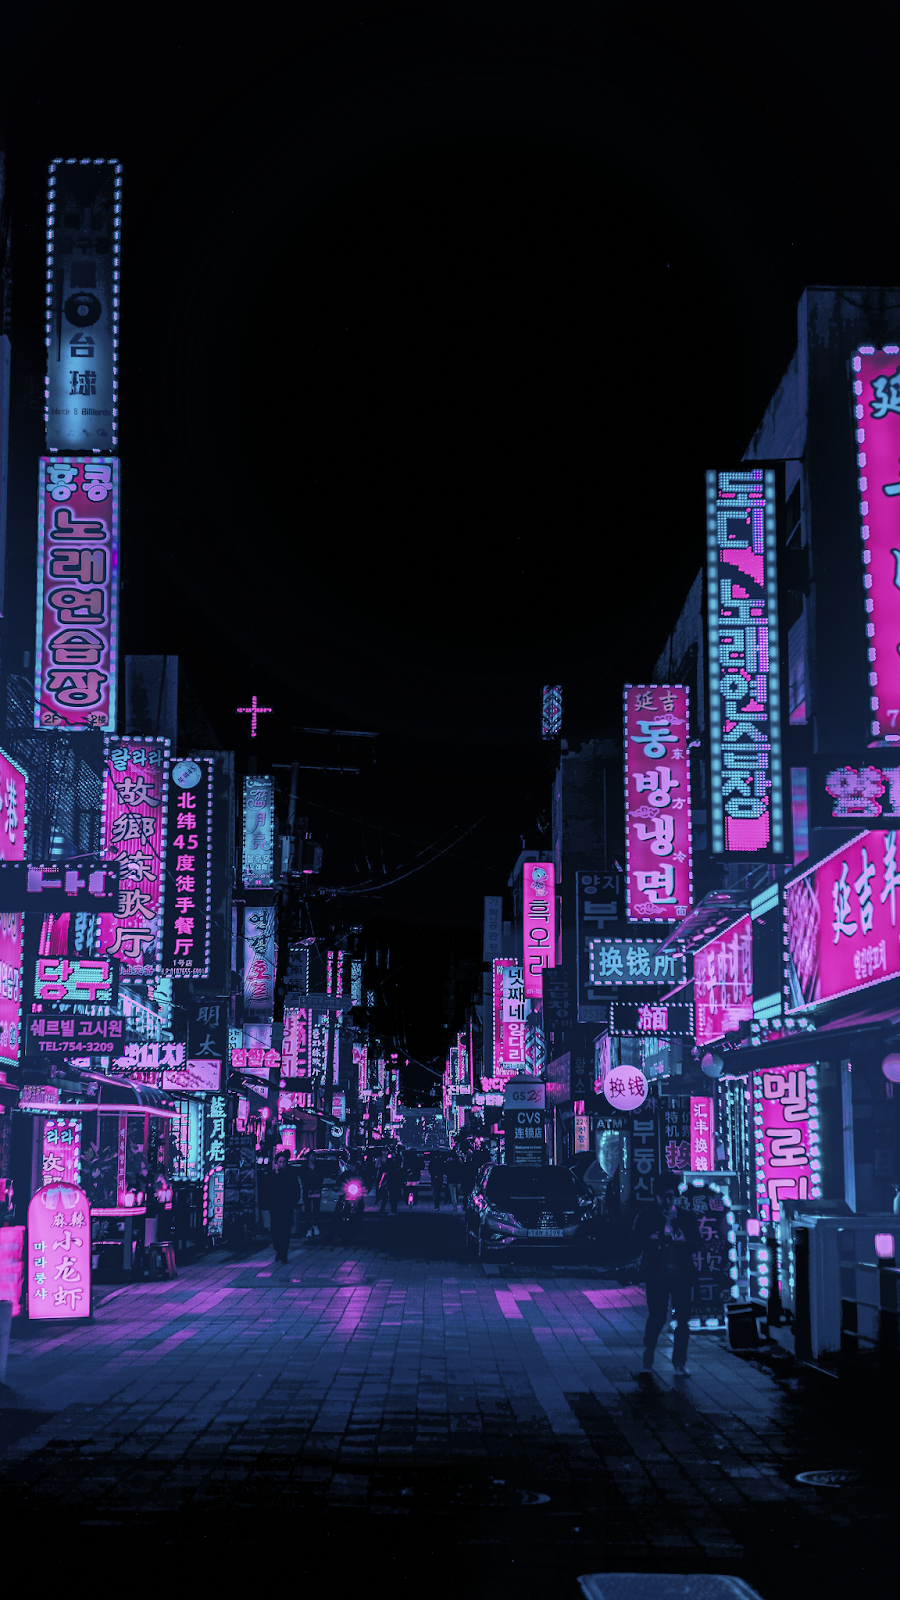 Asian Street 4K Wallpaper Amoled. HeroScreen. City aesthetic, Anime scenery wallpaper, Night aesthetic